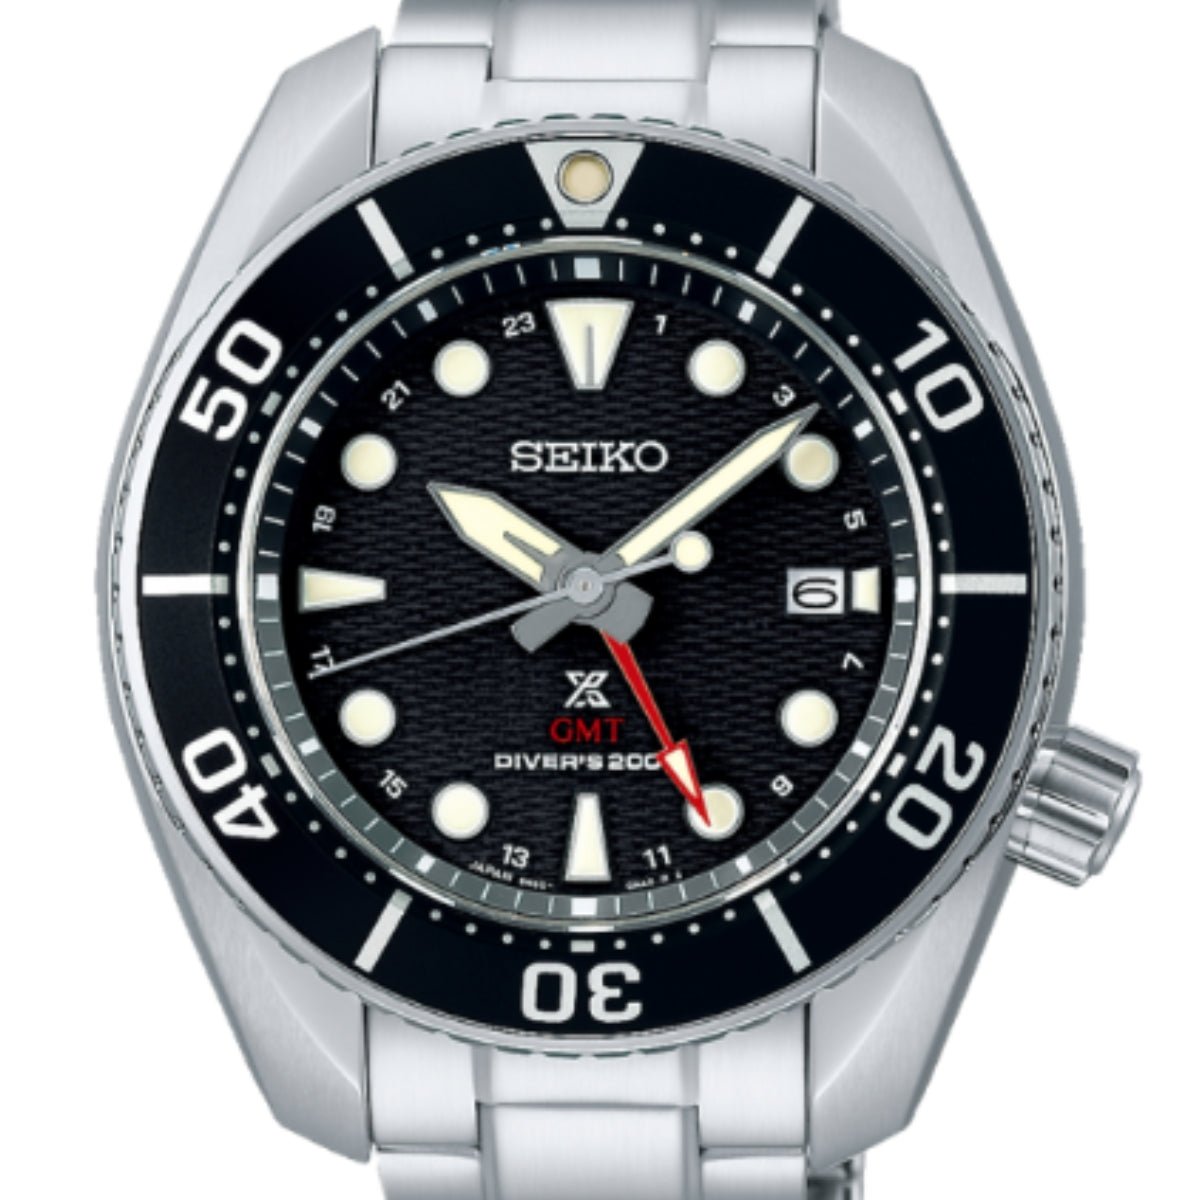 Seiko JDM Prospex GMT Sumo Solar Divers Black Dial Watch SBPK003 -Seiko